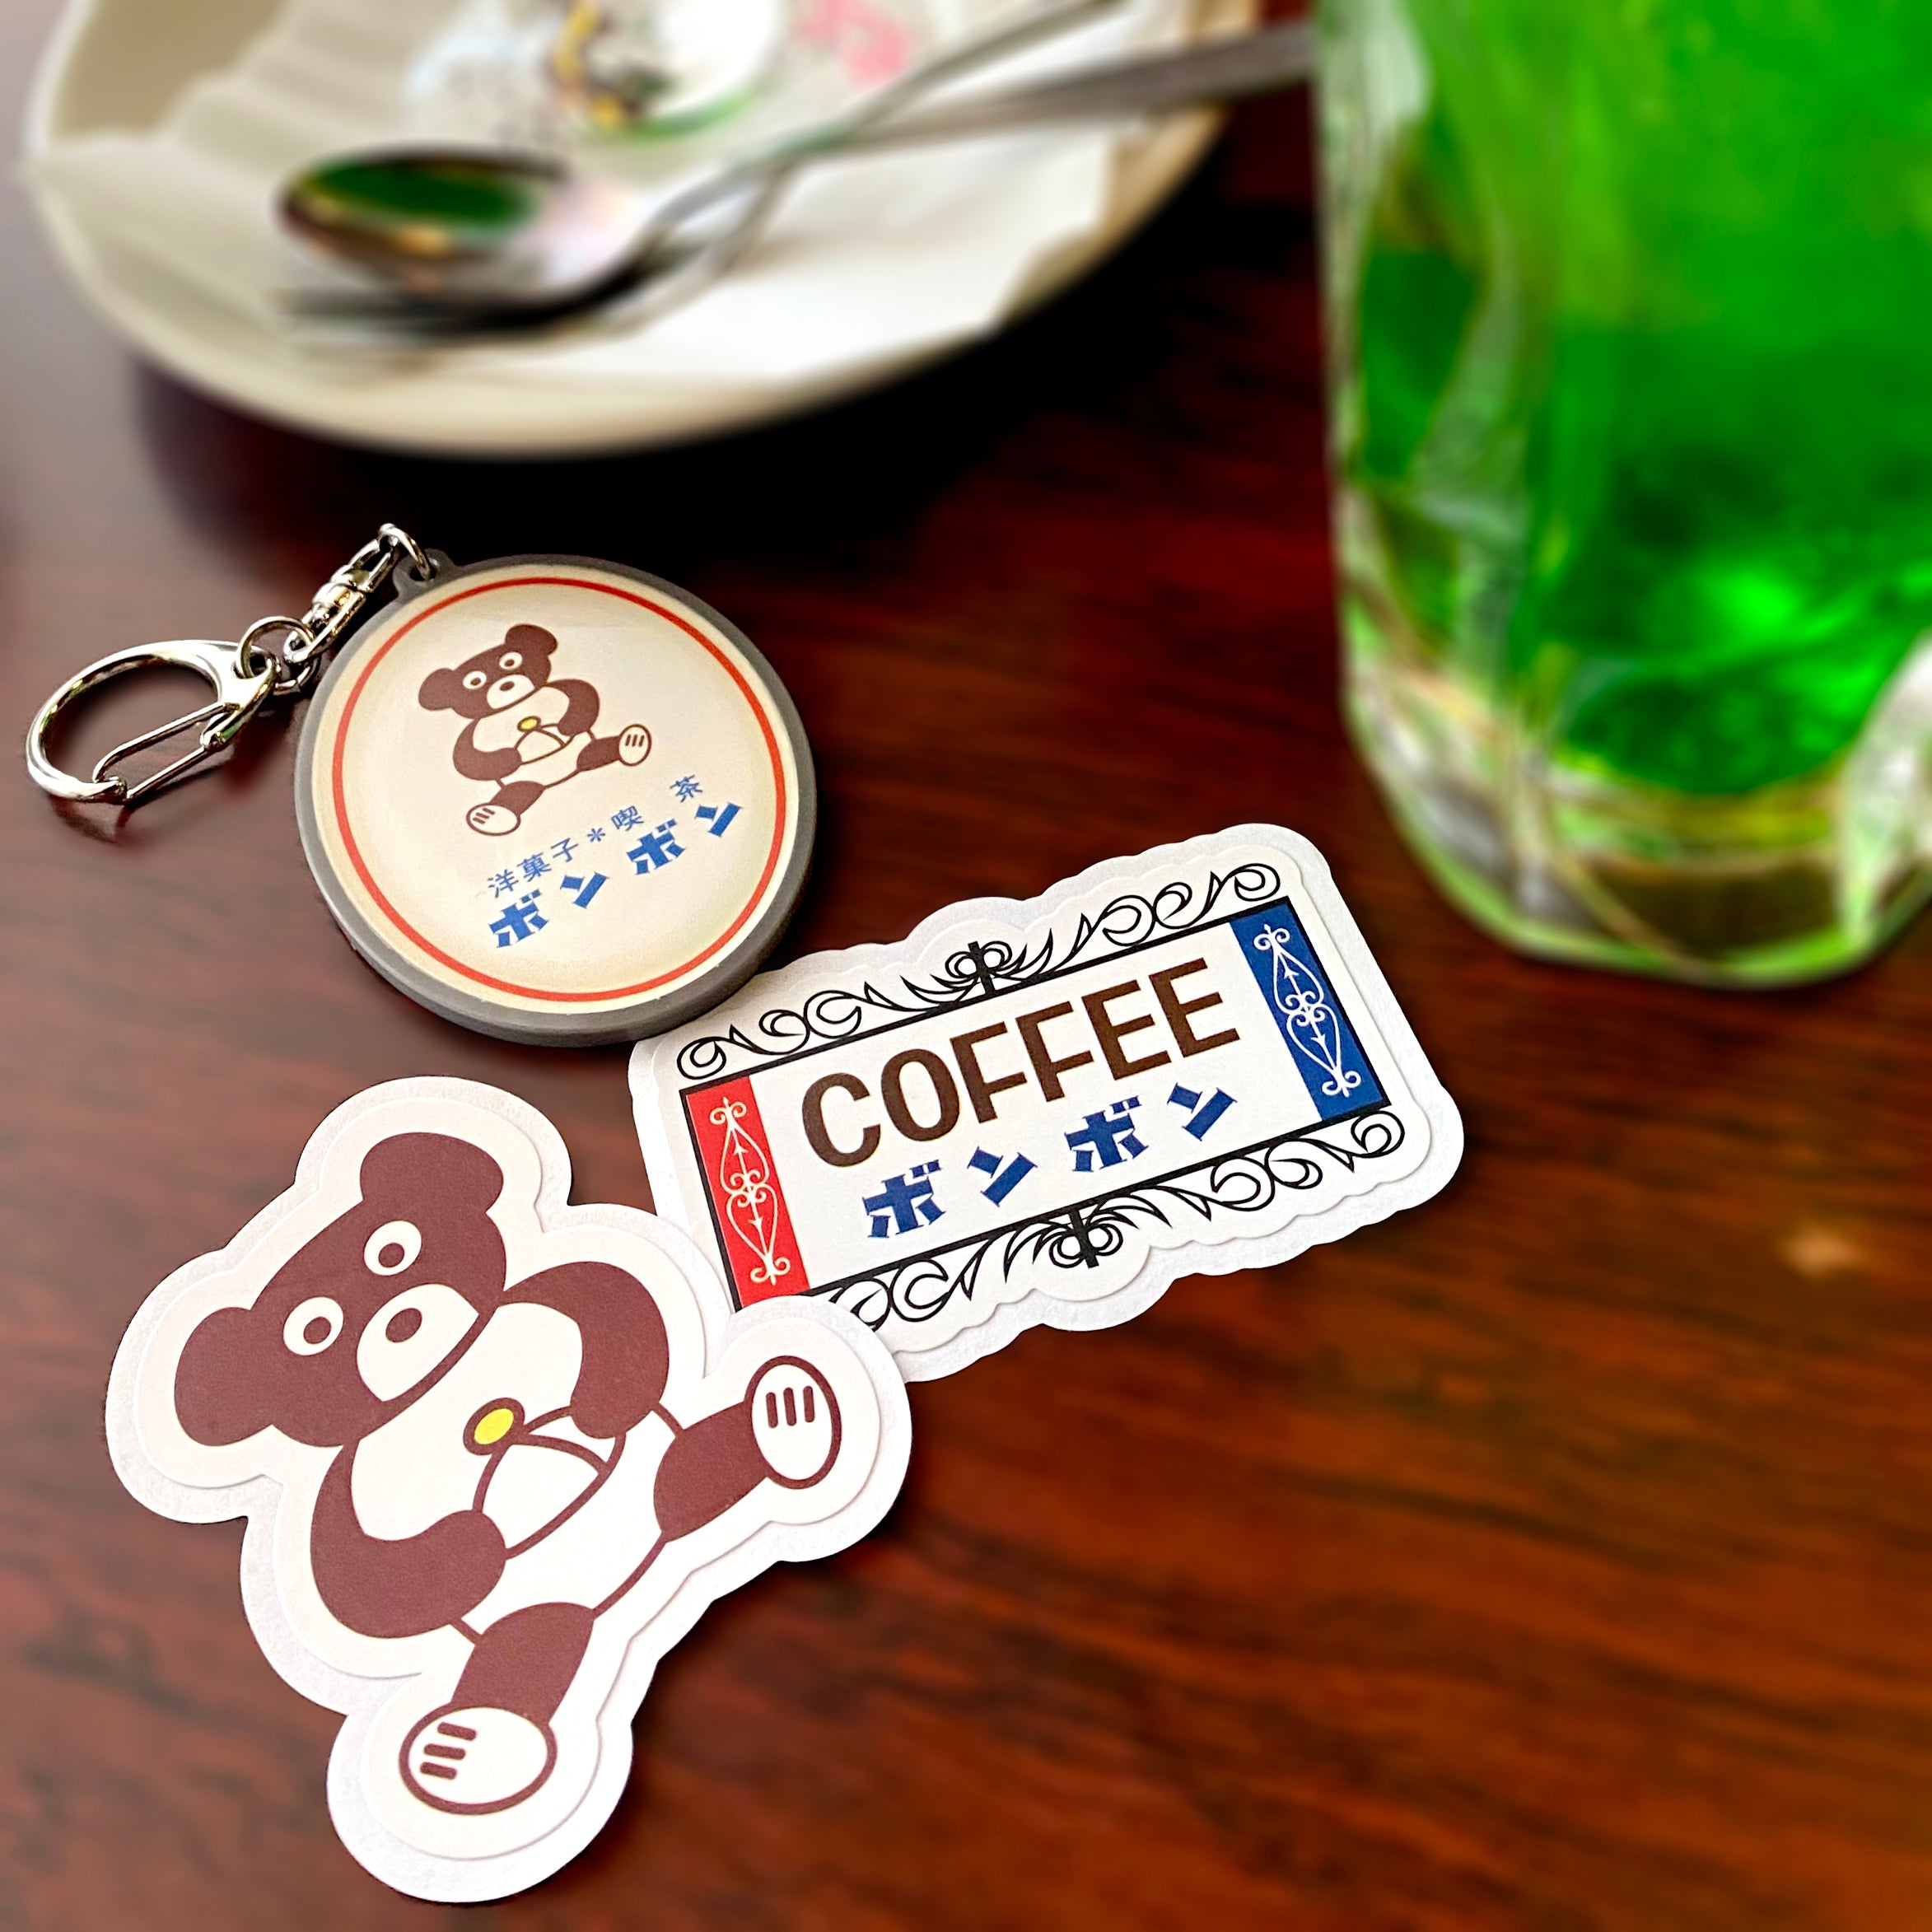 Sticker ng signboard ng Cafe Bonbon